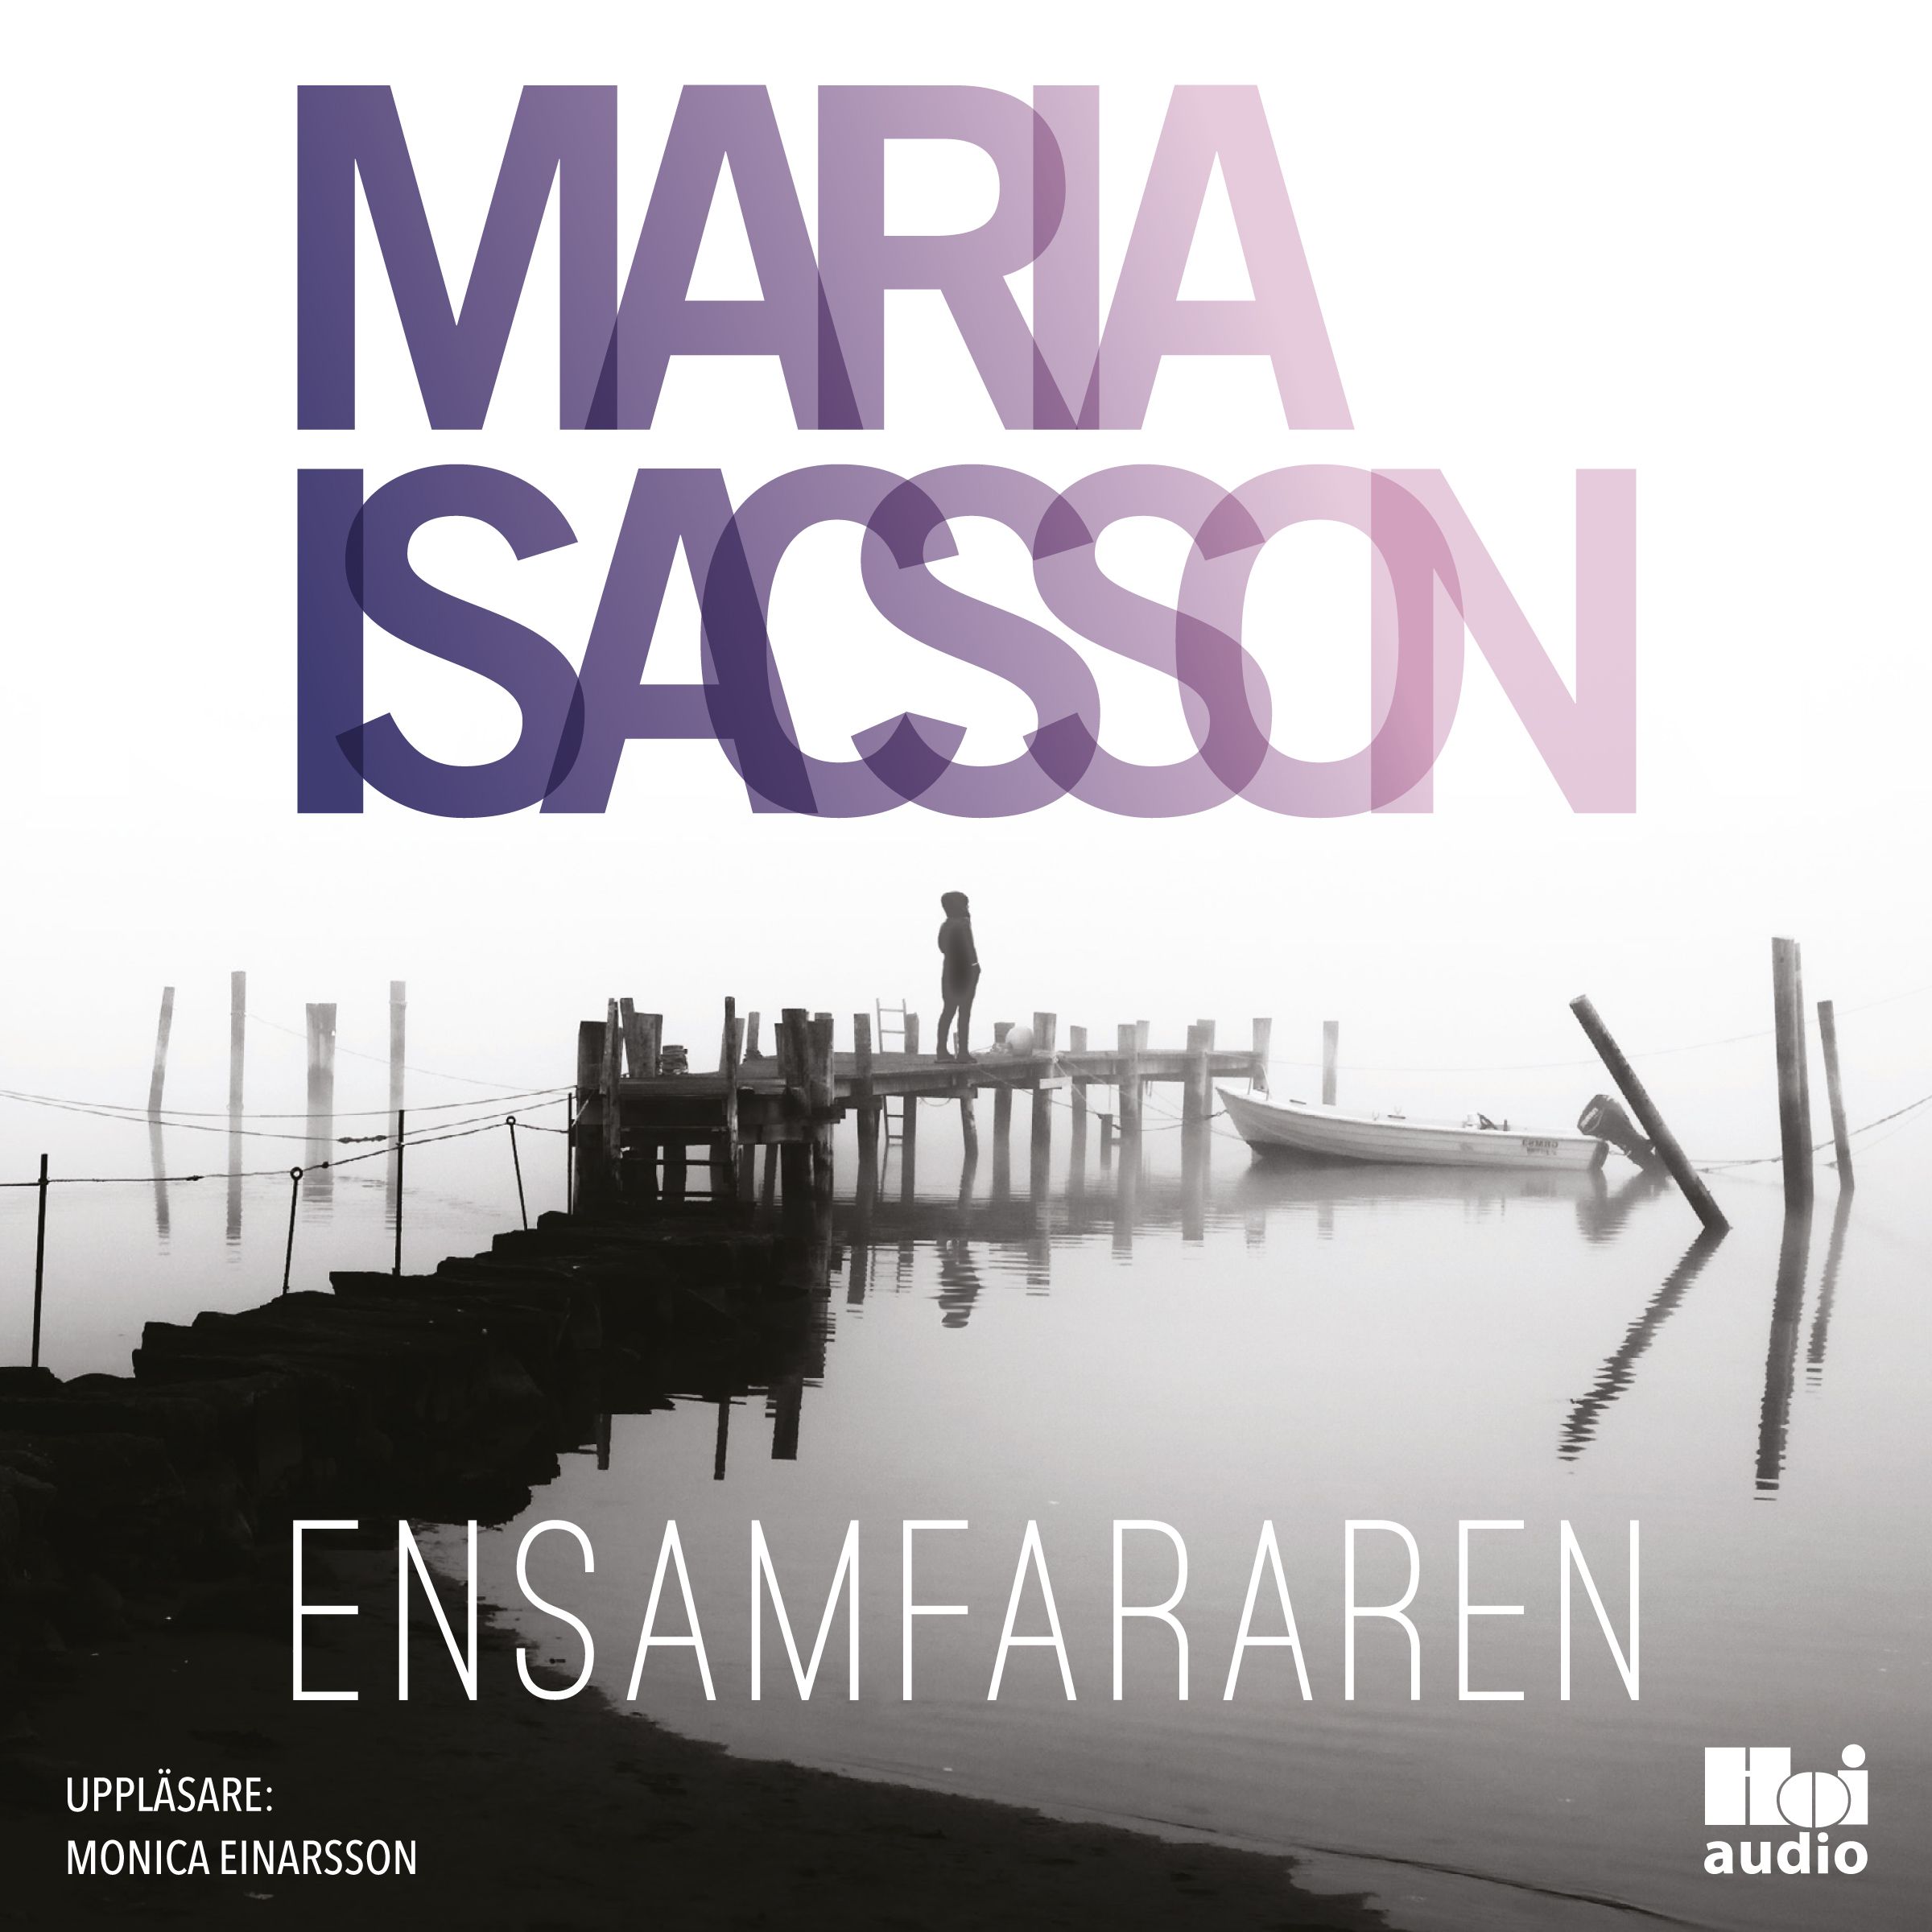 Ensamfararen, ljudbok av Maria Isacsson